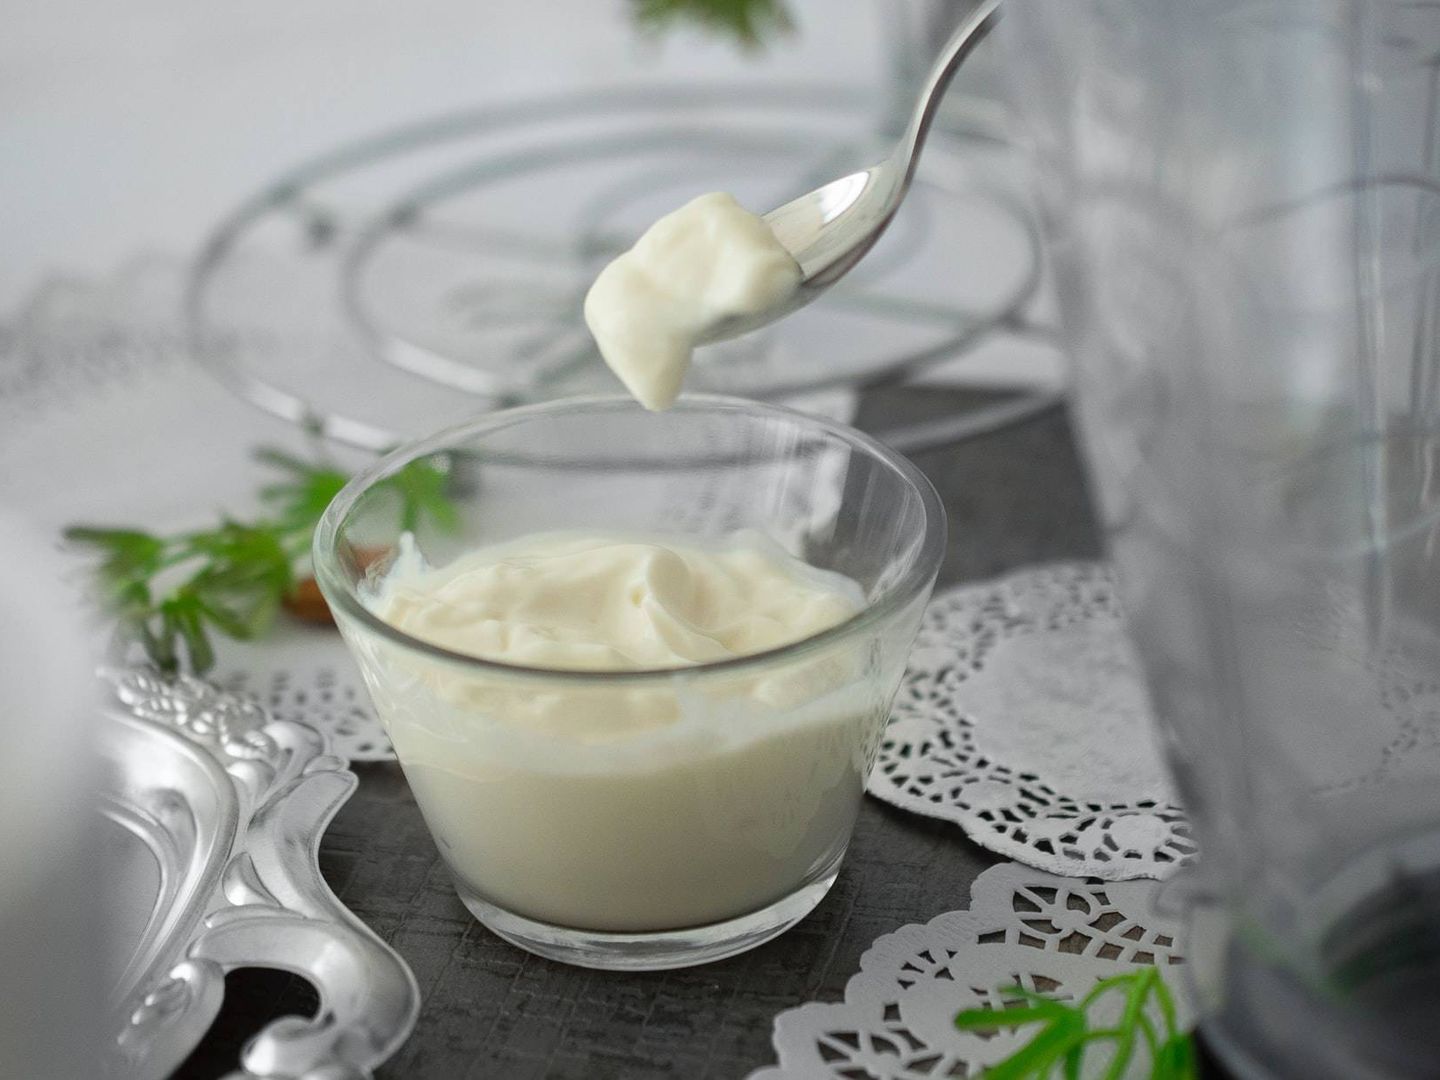 Uno de los productos que más recomiendan ingerir por su alto contenido en proteínas y bajo en calorías es el yogur (Unsplash)